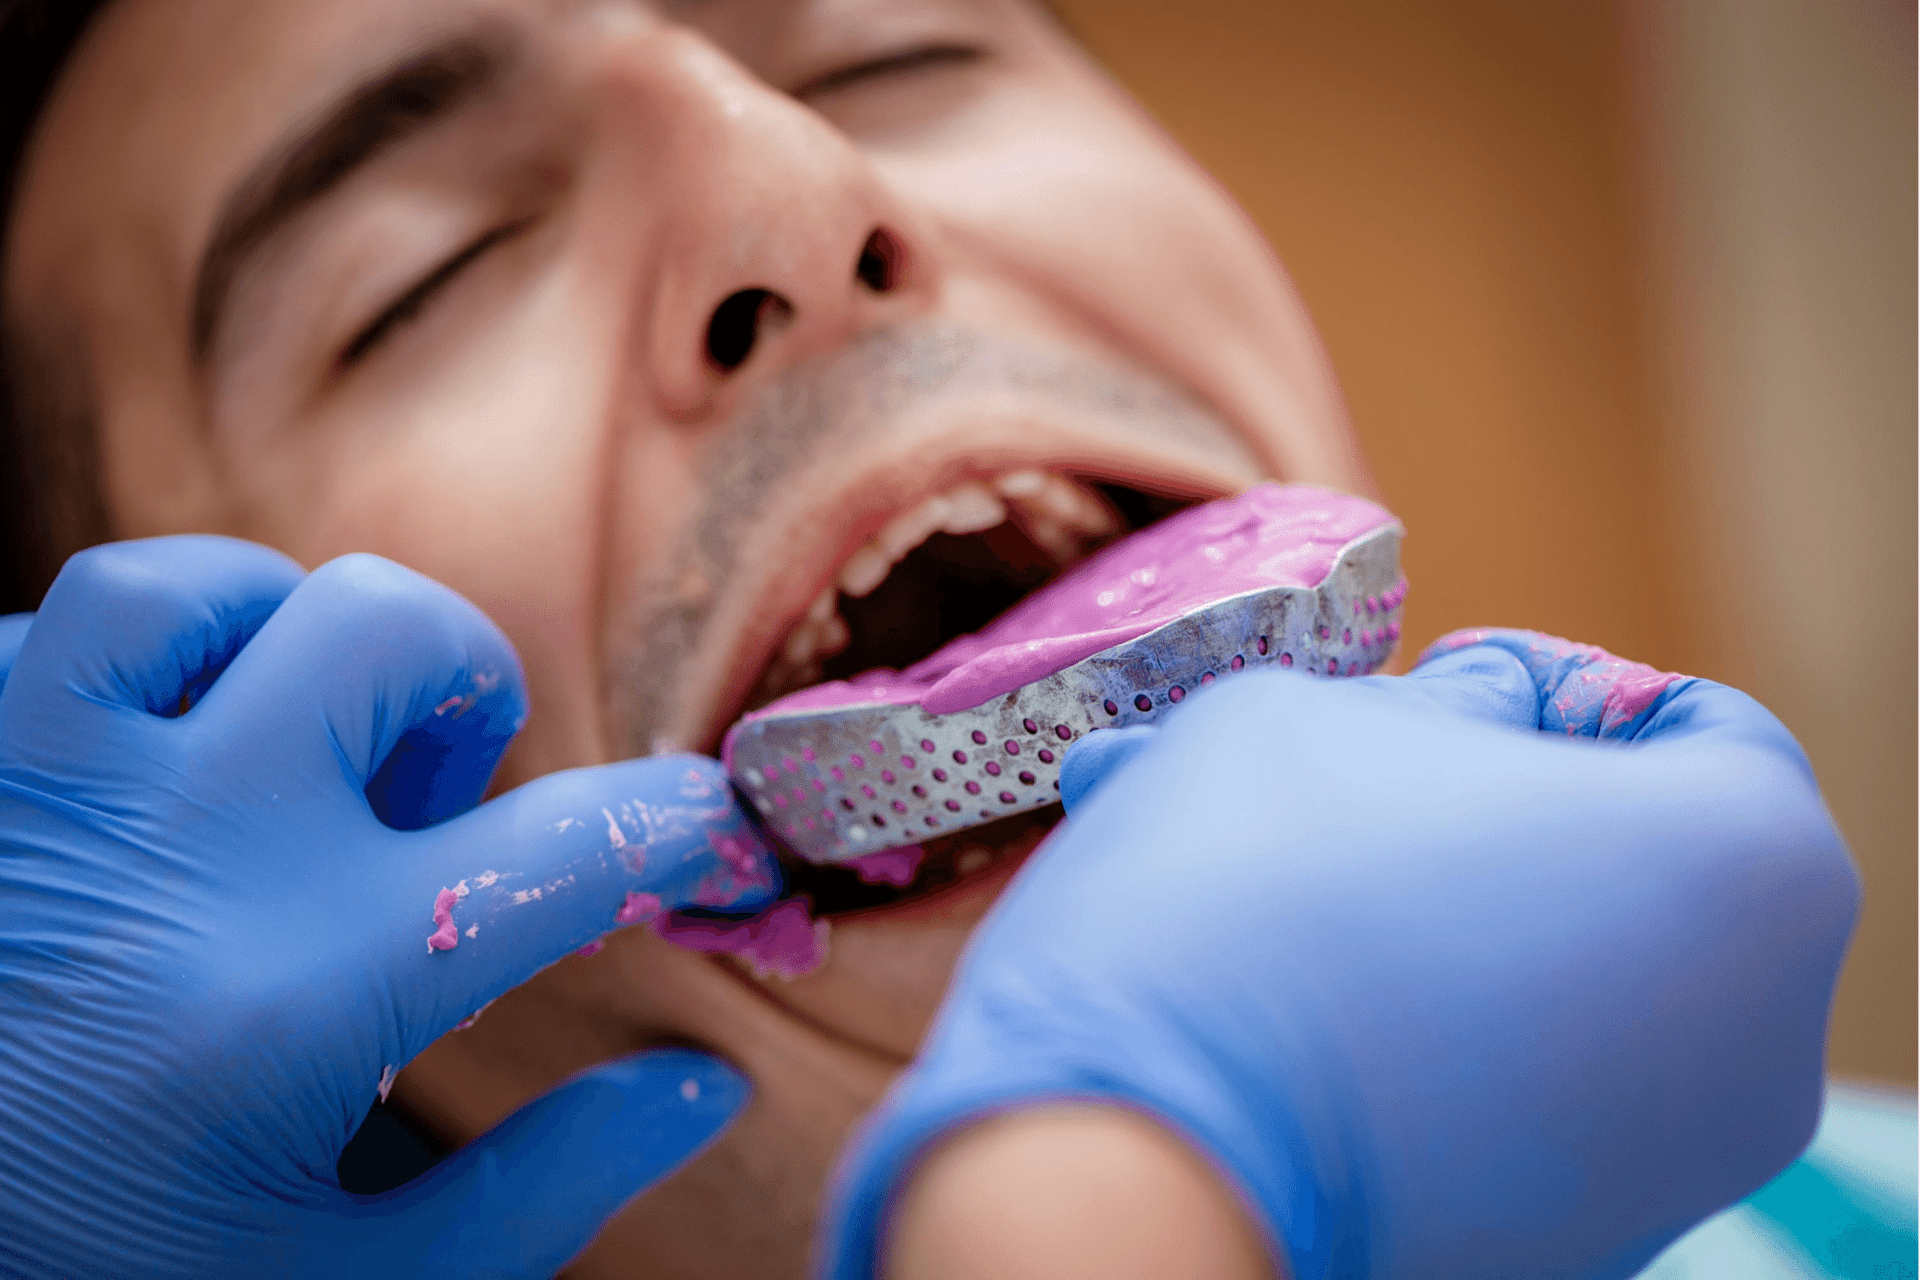 Способы реставрации зубов: как сделать зубные протезы в домашних условиях